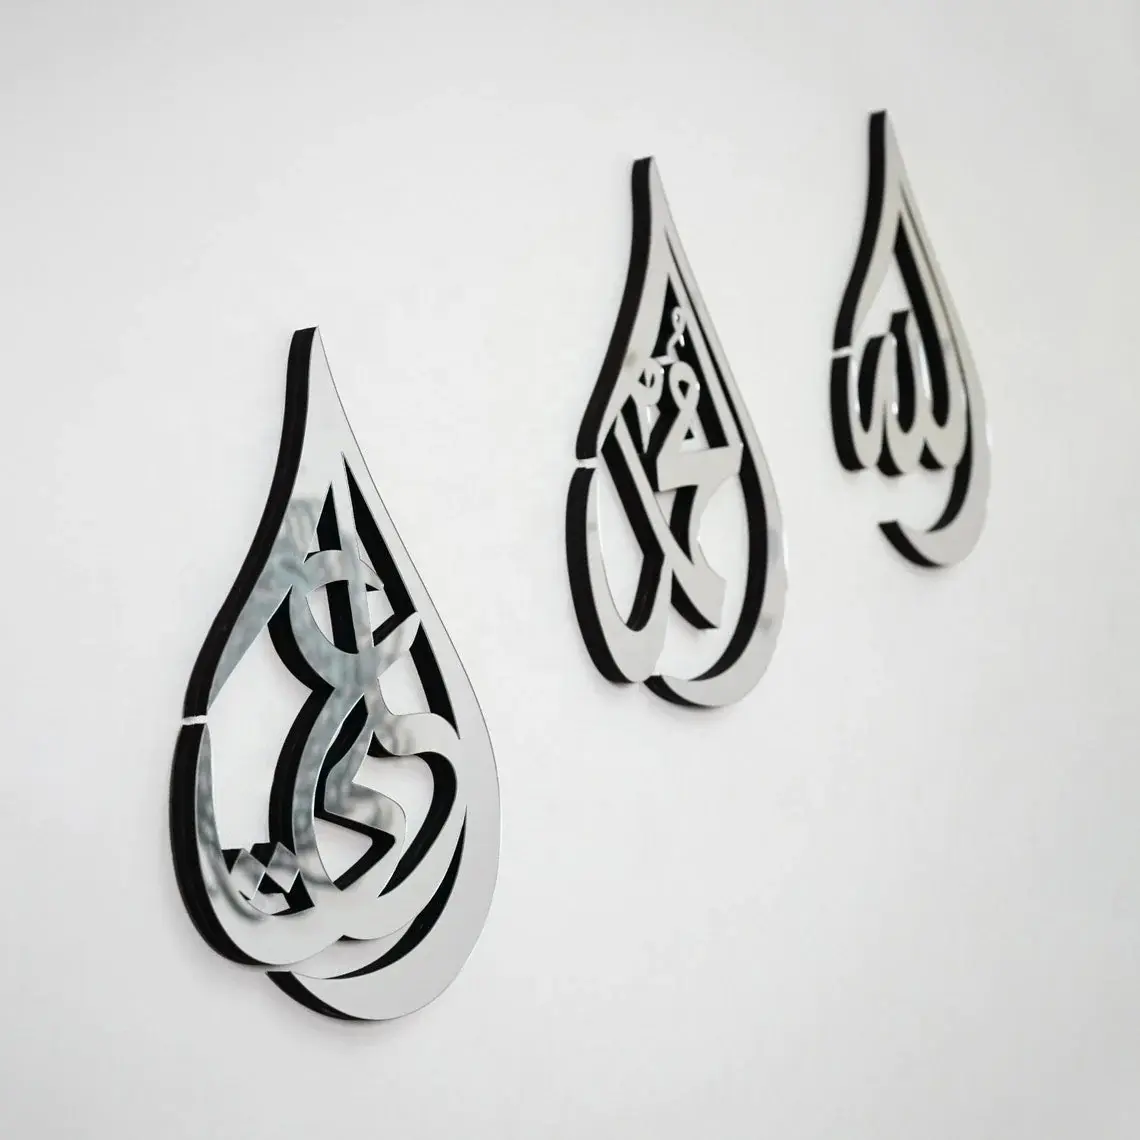 Hồi Giáo Trang trí nội thất 3pcs allah mohammad Ali tường nghệ thuật hồi giáo tường nghệ thuật trang trí dấu hiệu